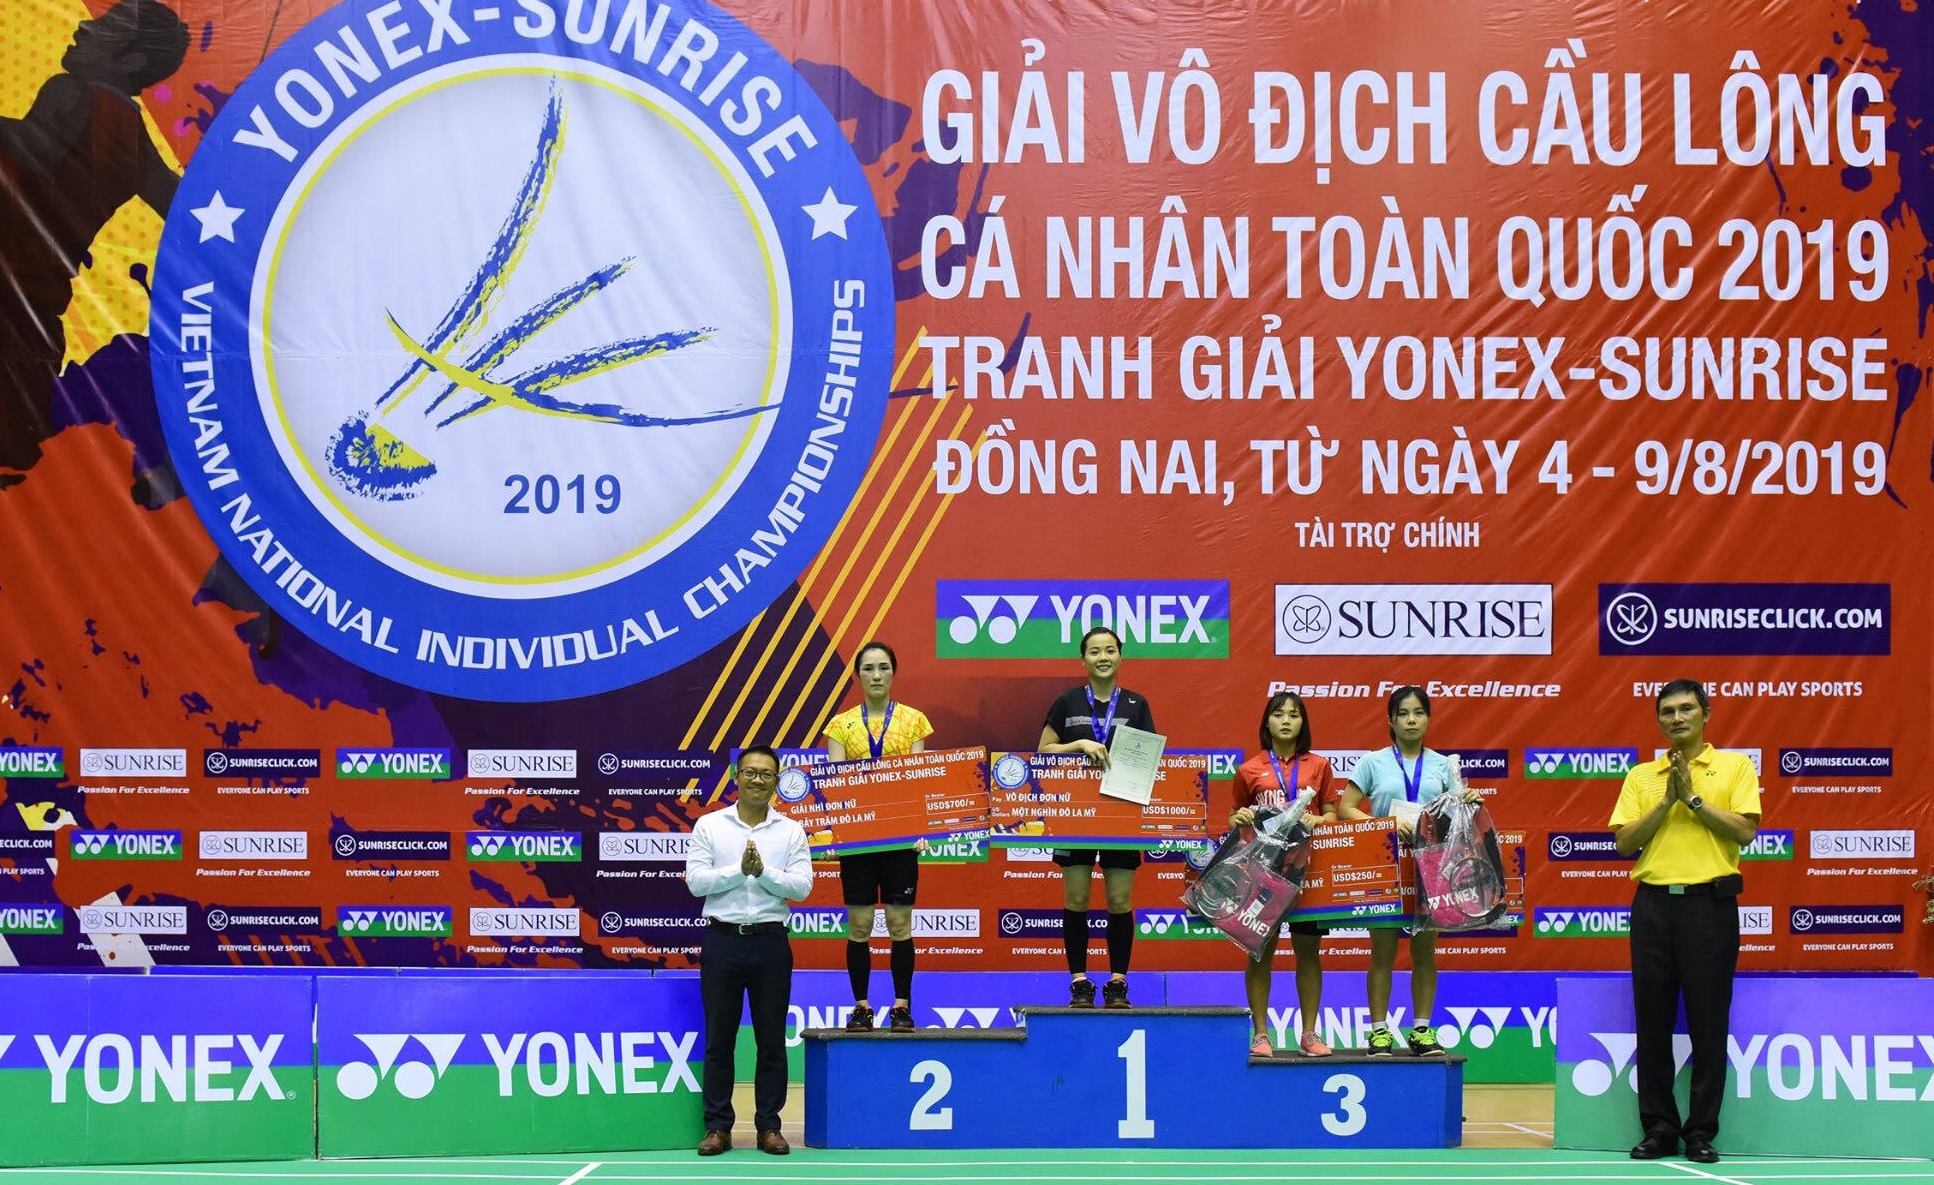 Giải cầu lông cá nhân toàn quốc 2019: Nguyễn Tiến Minh, Nguyễn Thùy Linh vô địch